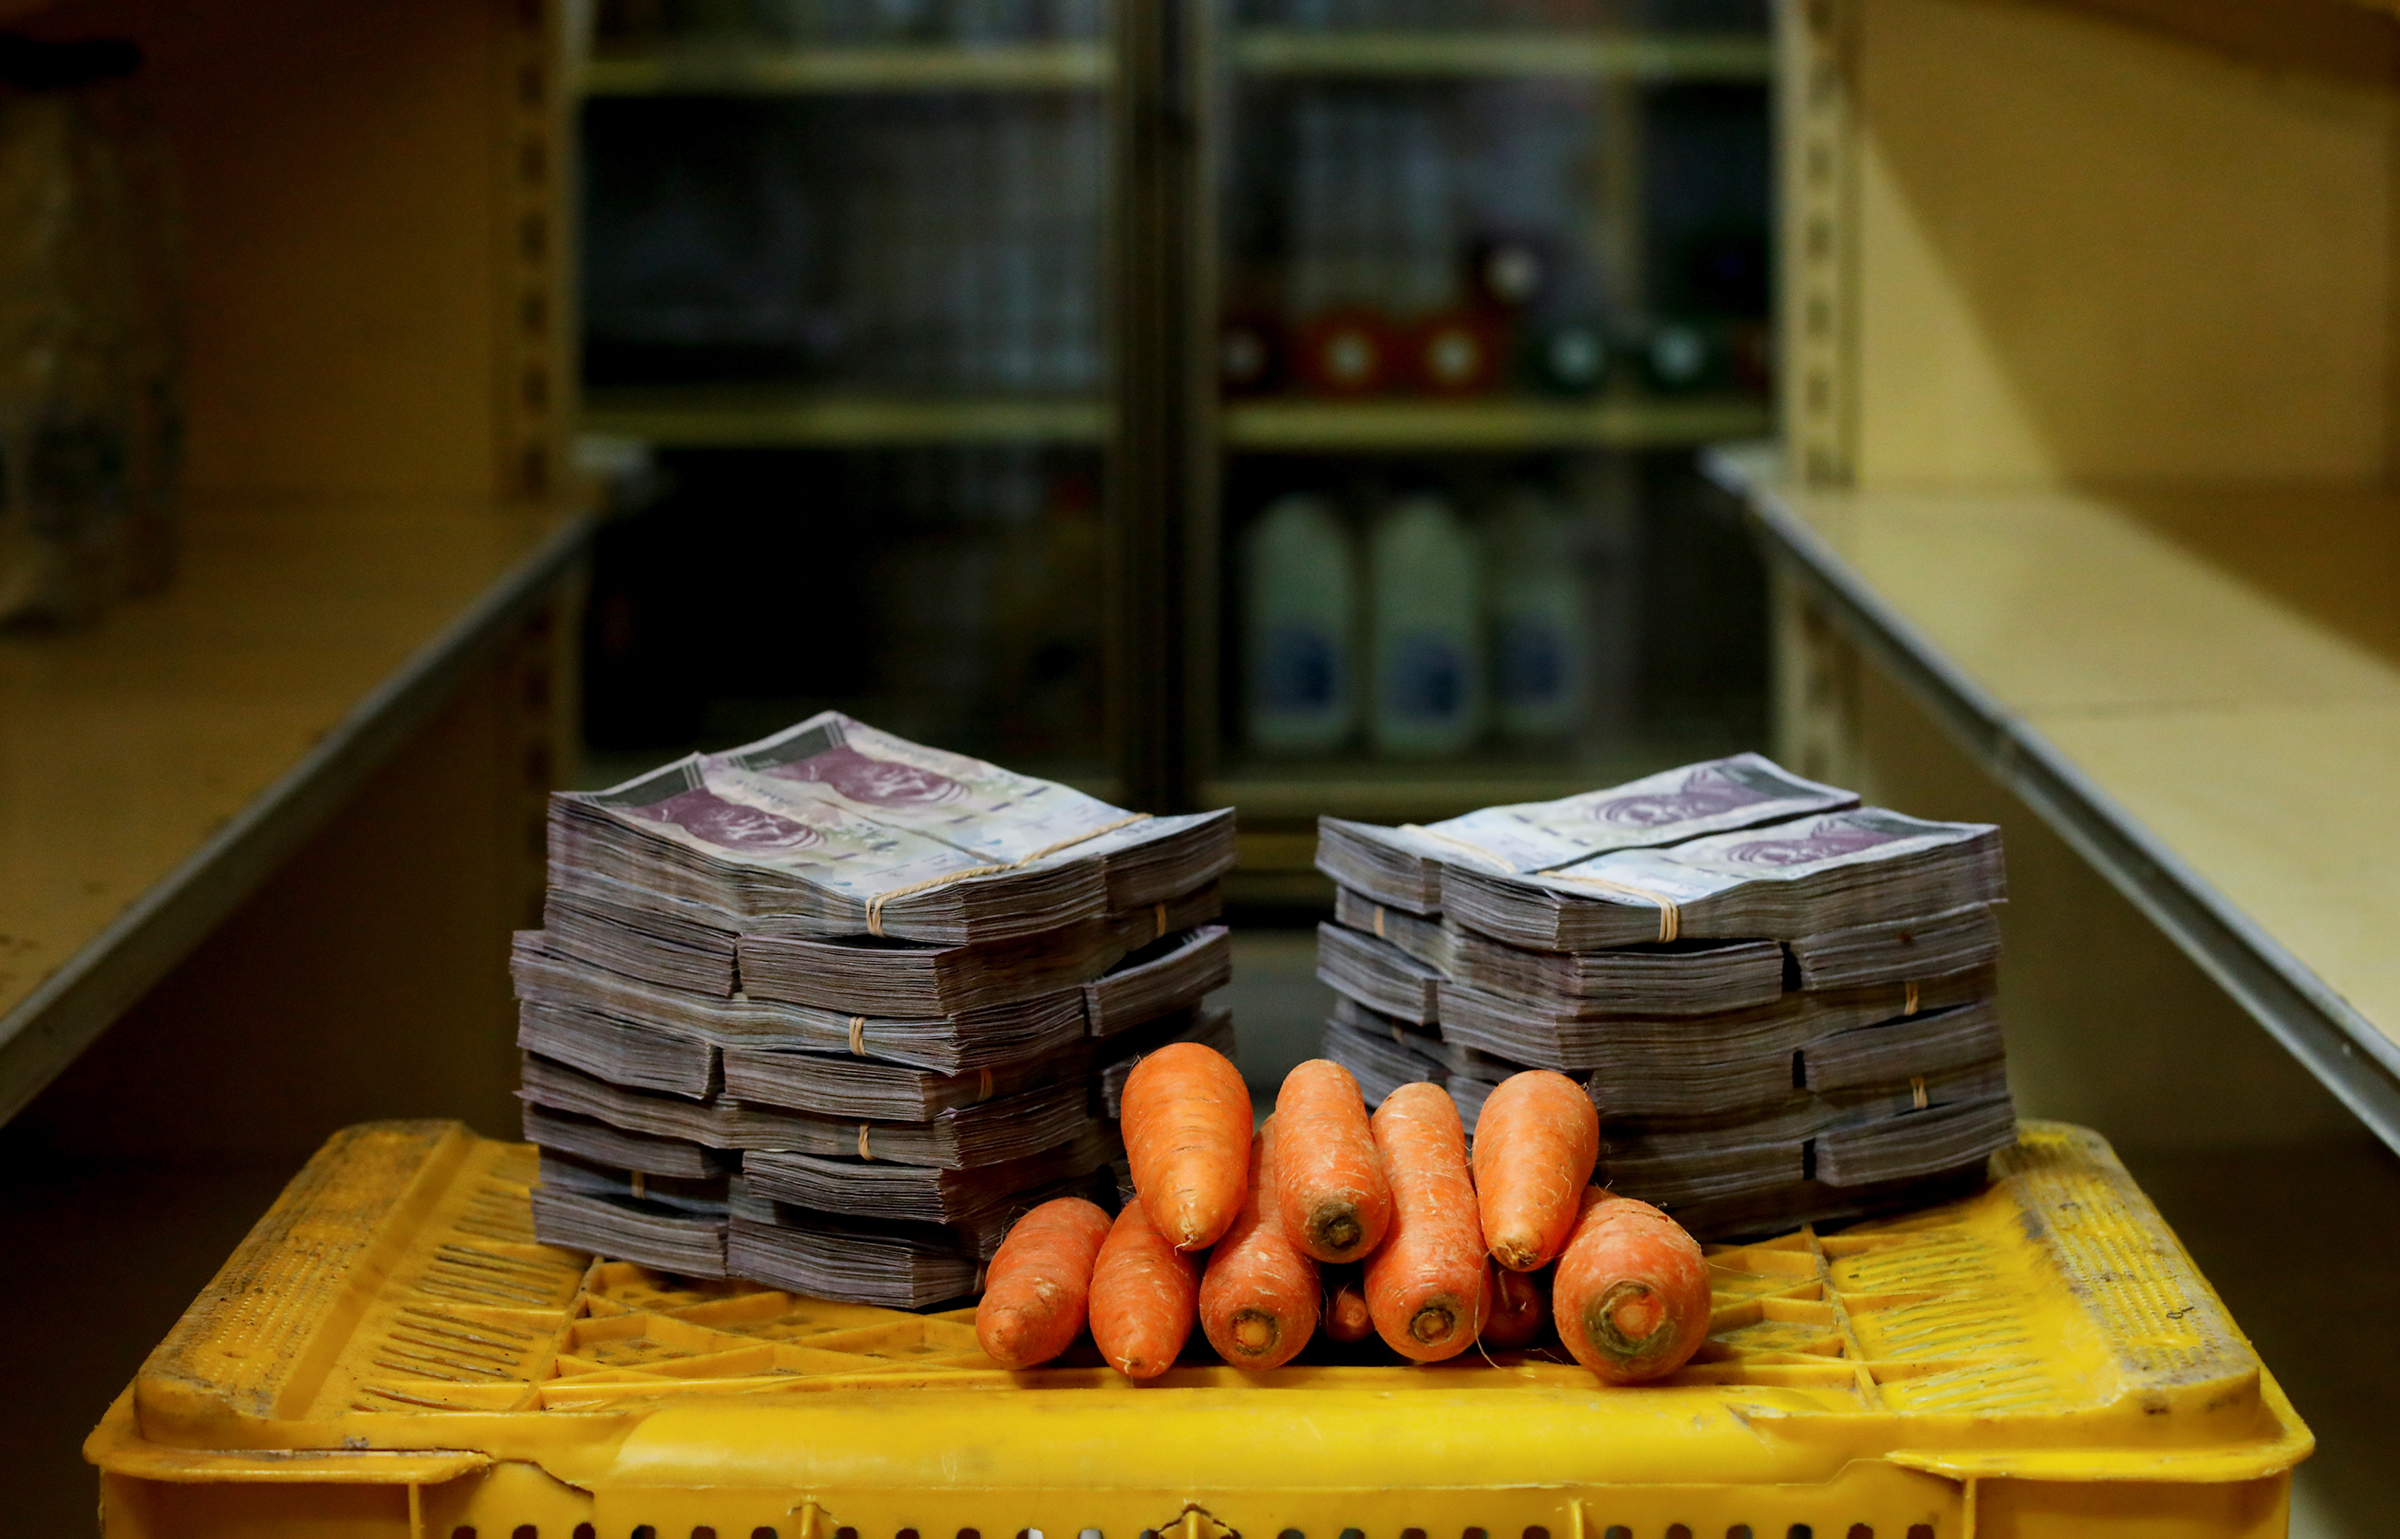 1 кг моркови стоит около 3 млн боливаров, или $0,46
